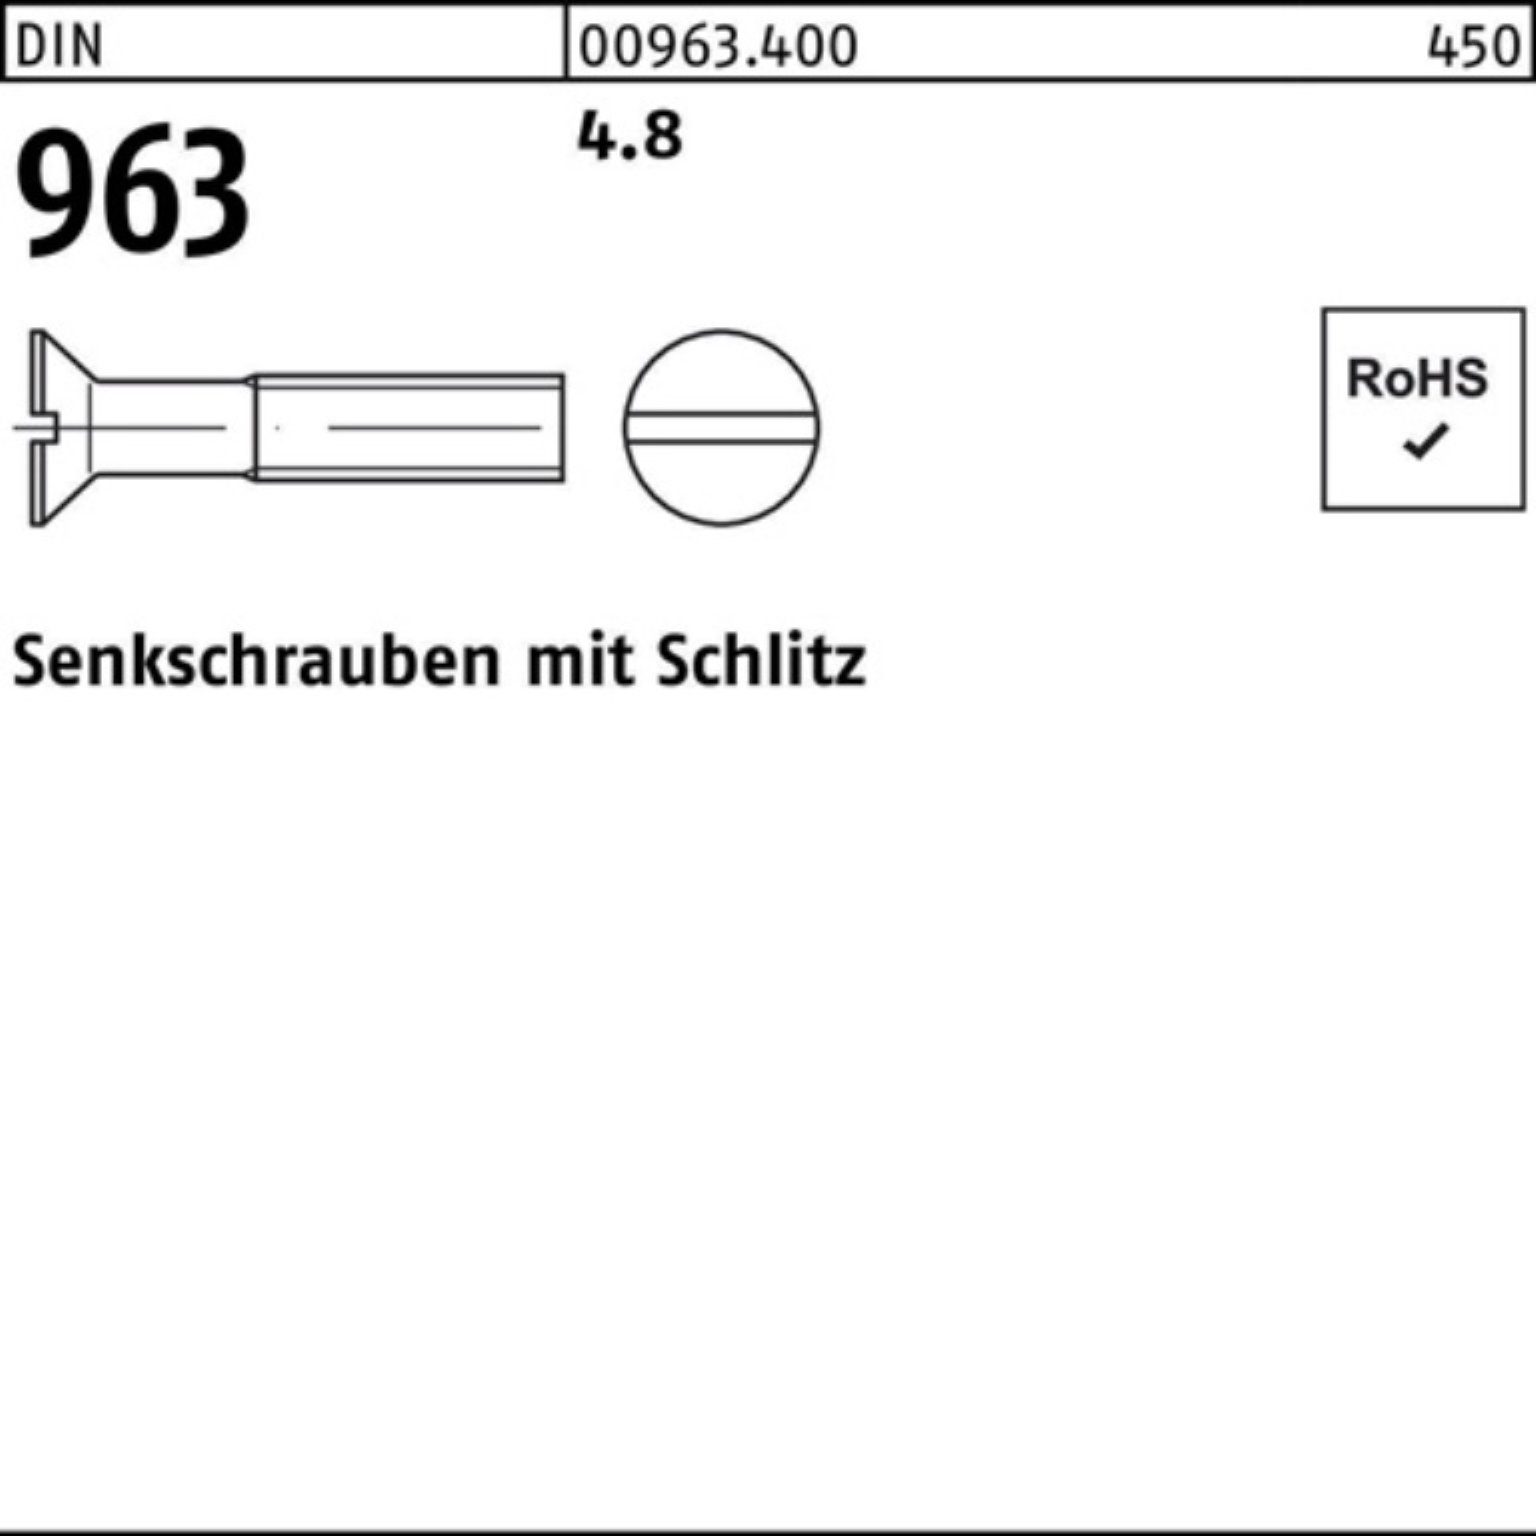 Senkschraube 963 Reyher Stück M20x 963 100er DIN 35 25 Senkschraube Pack DIN Schlitz 4.8